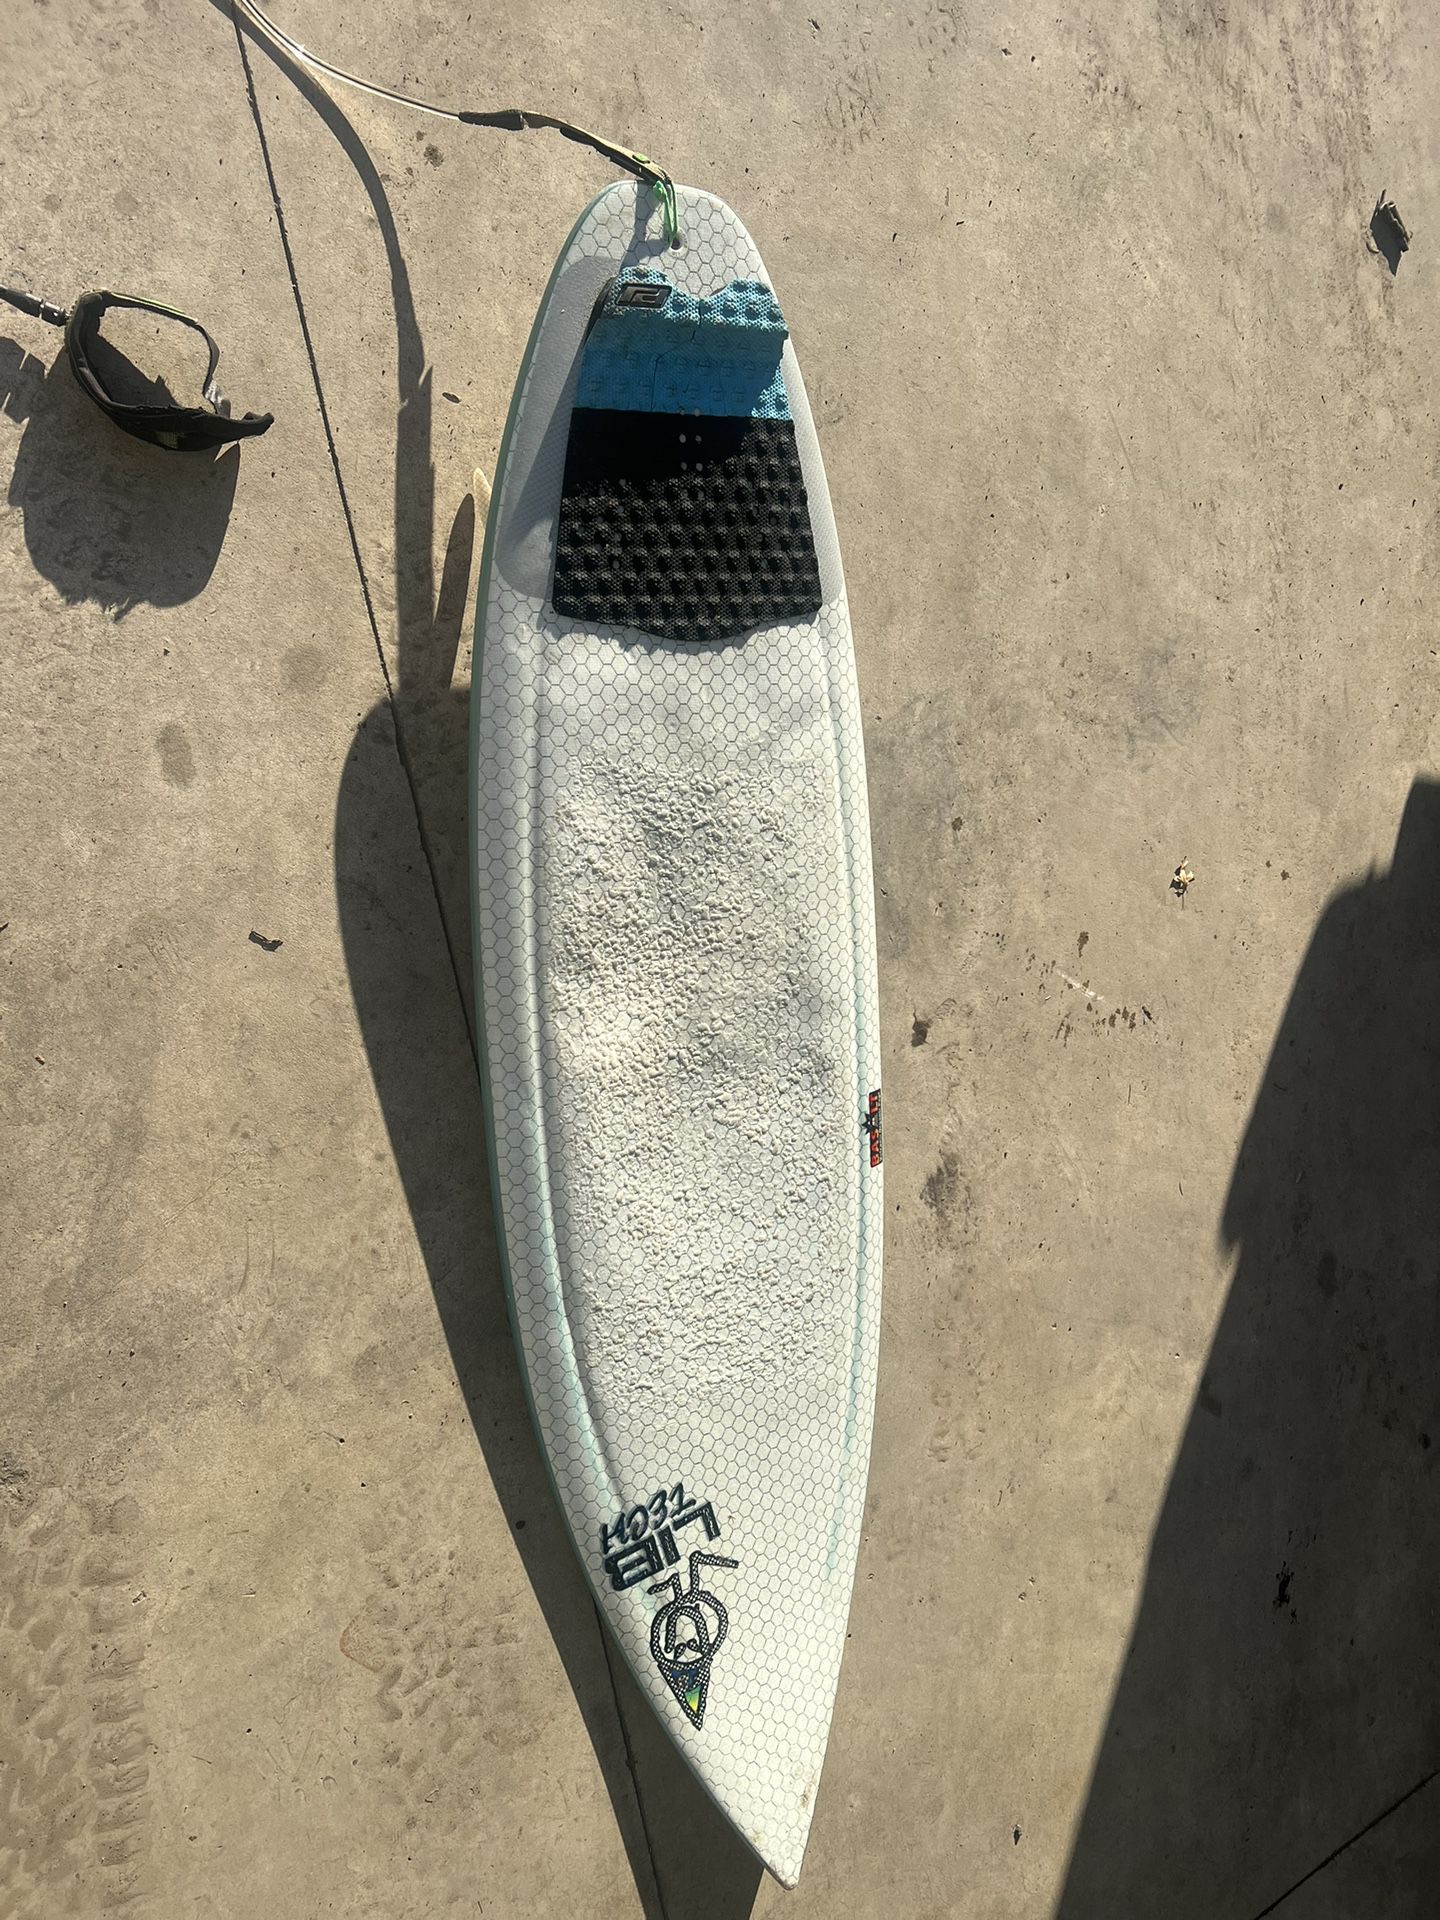 Libtech 5,11 Surfboard 